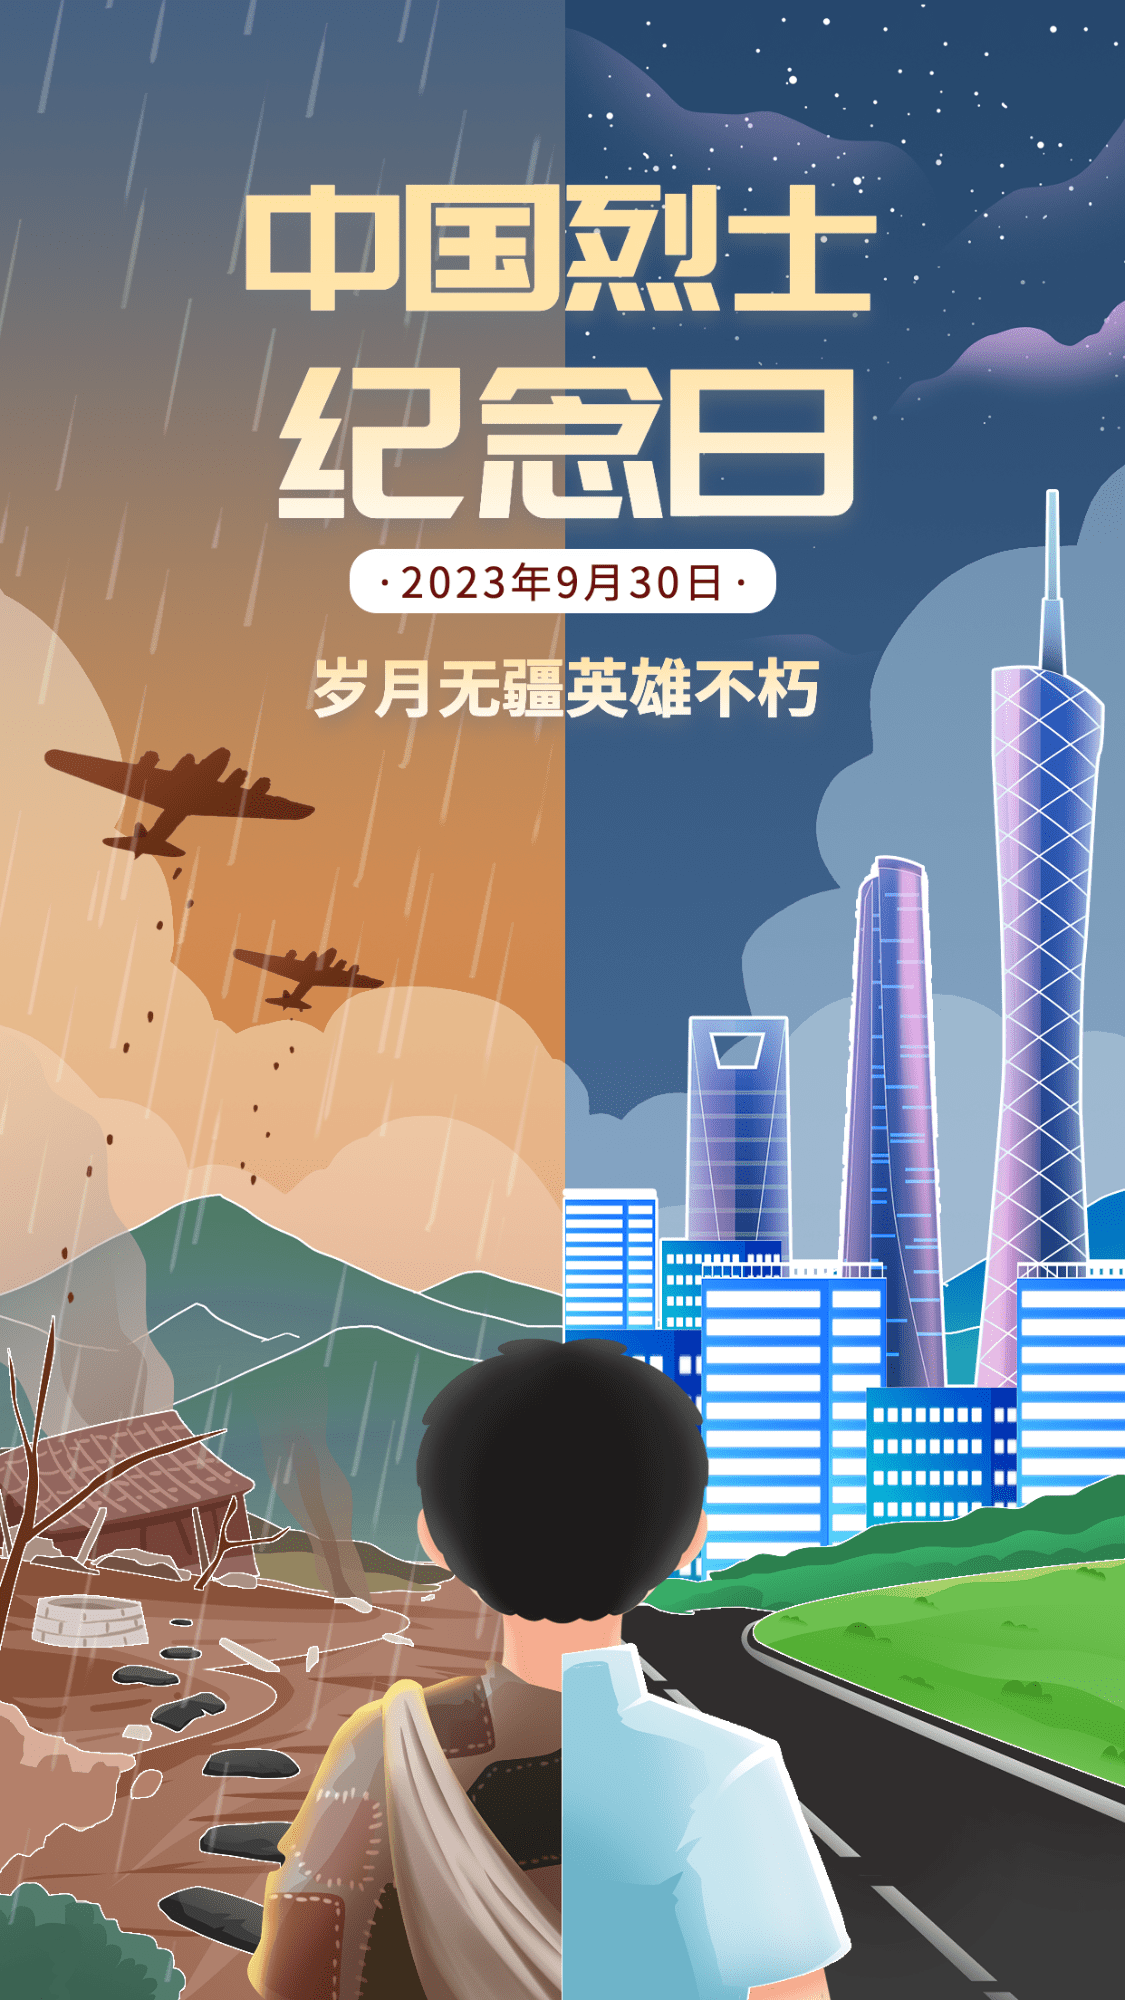 中国烈士纪念日节日宣传插画手机海报预览效果